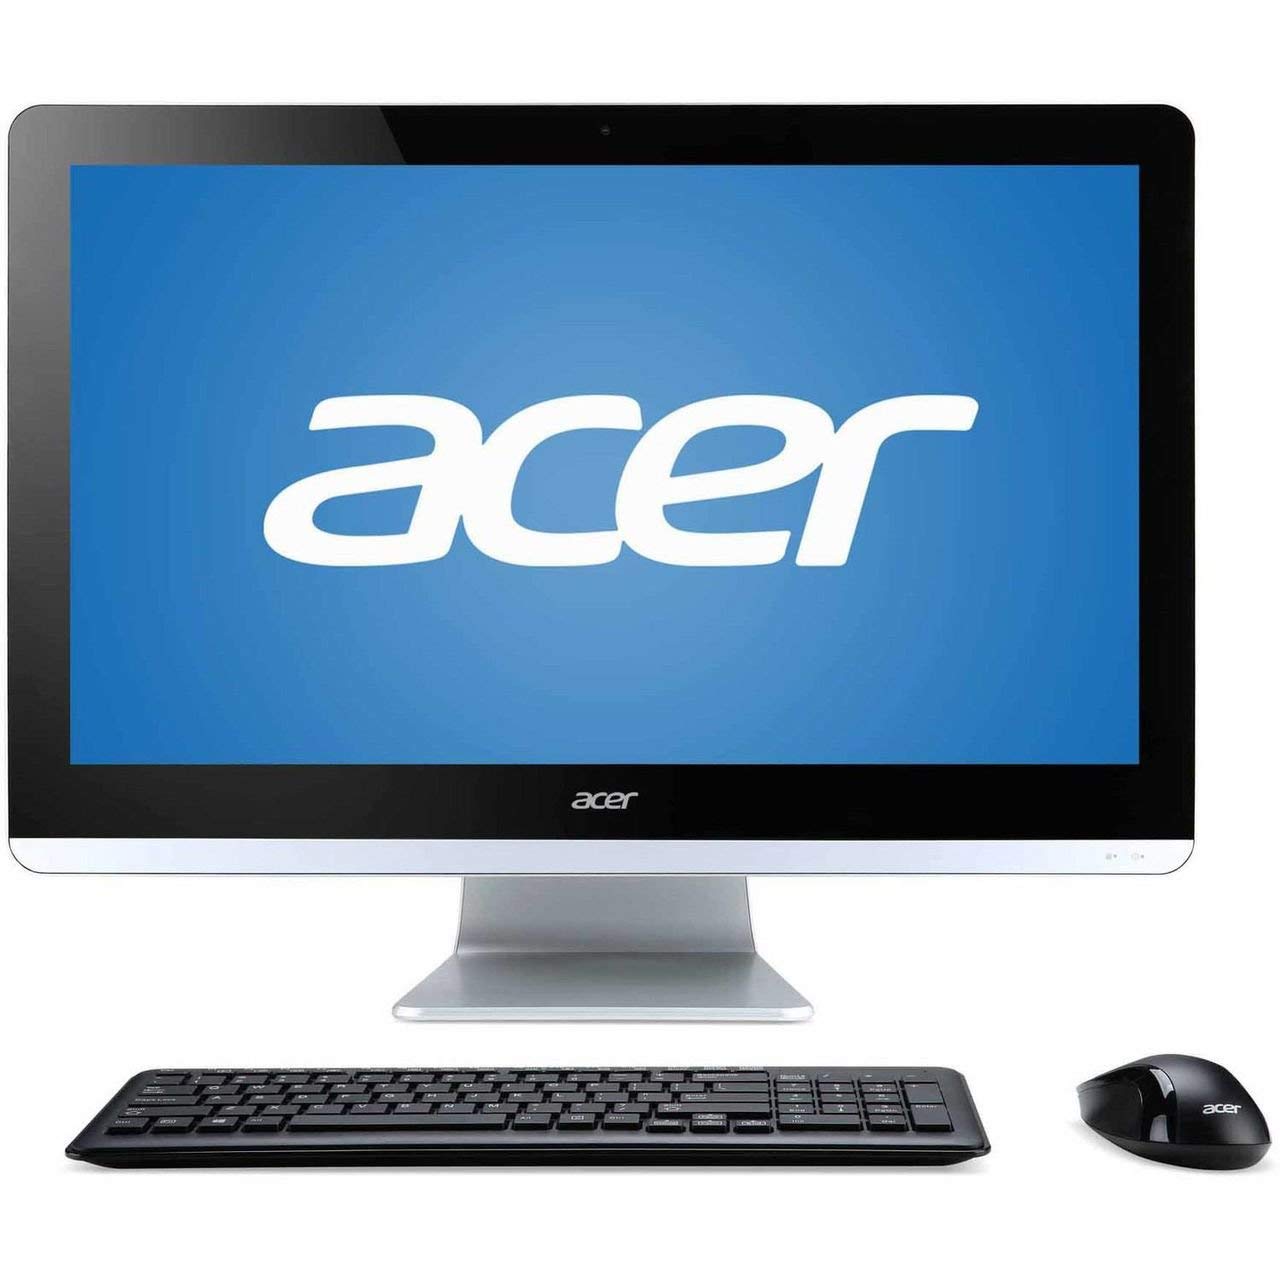 Acer presento nuevos productos en IFA 2018